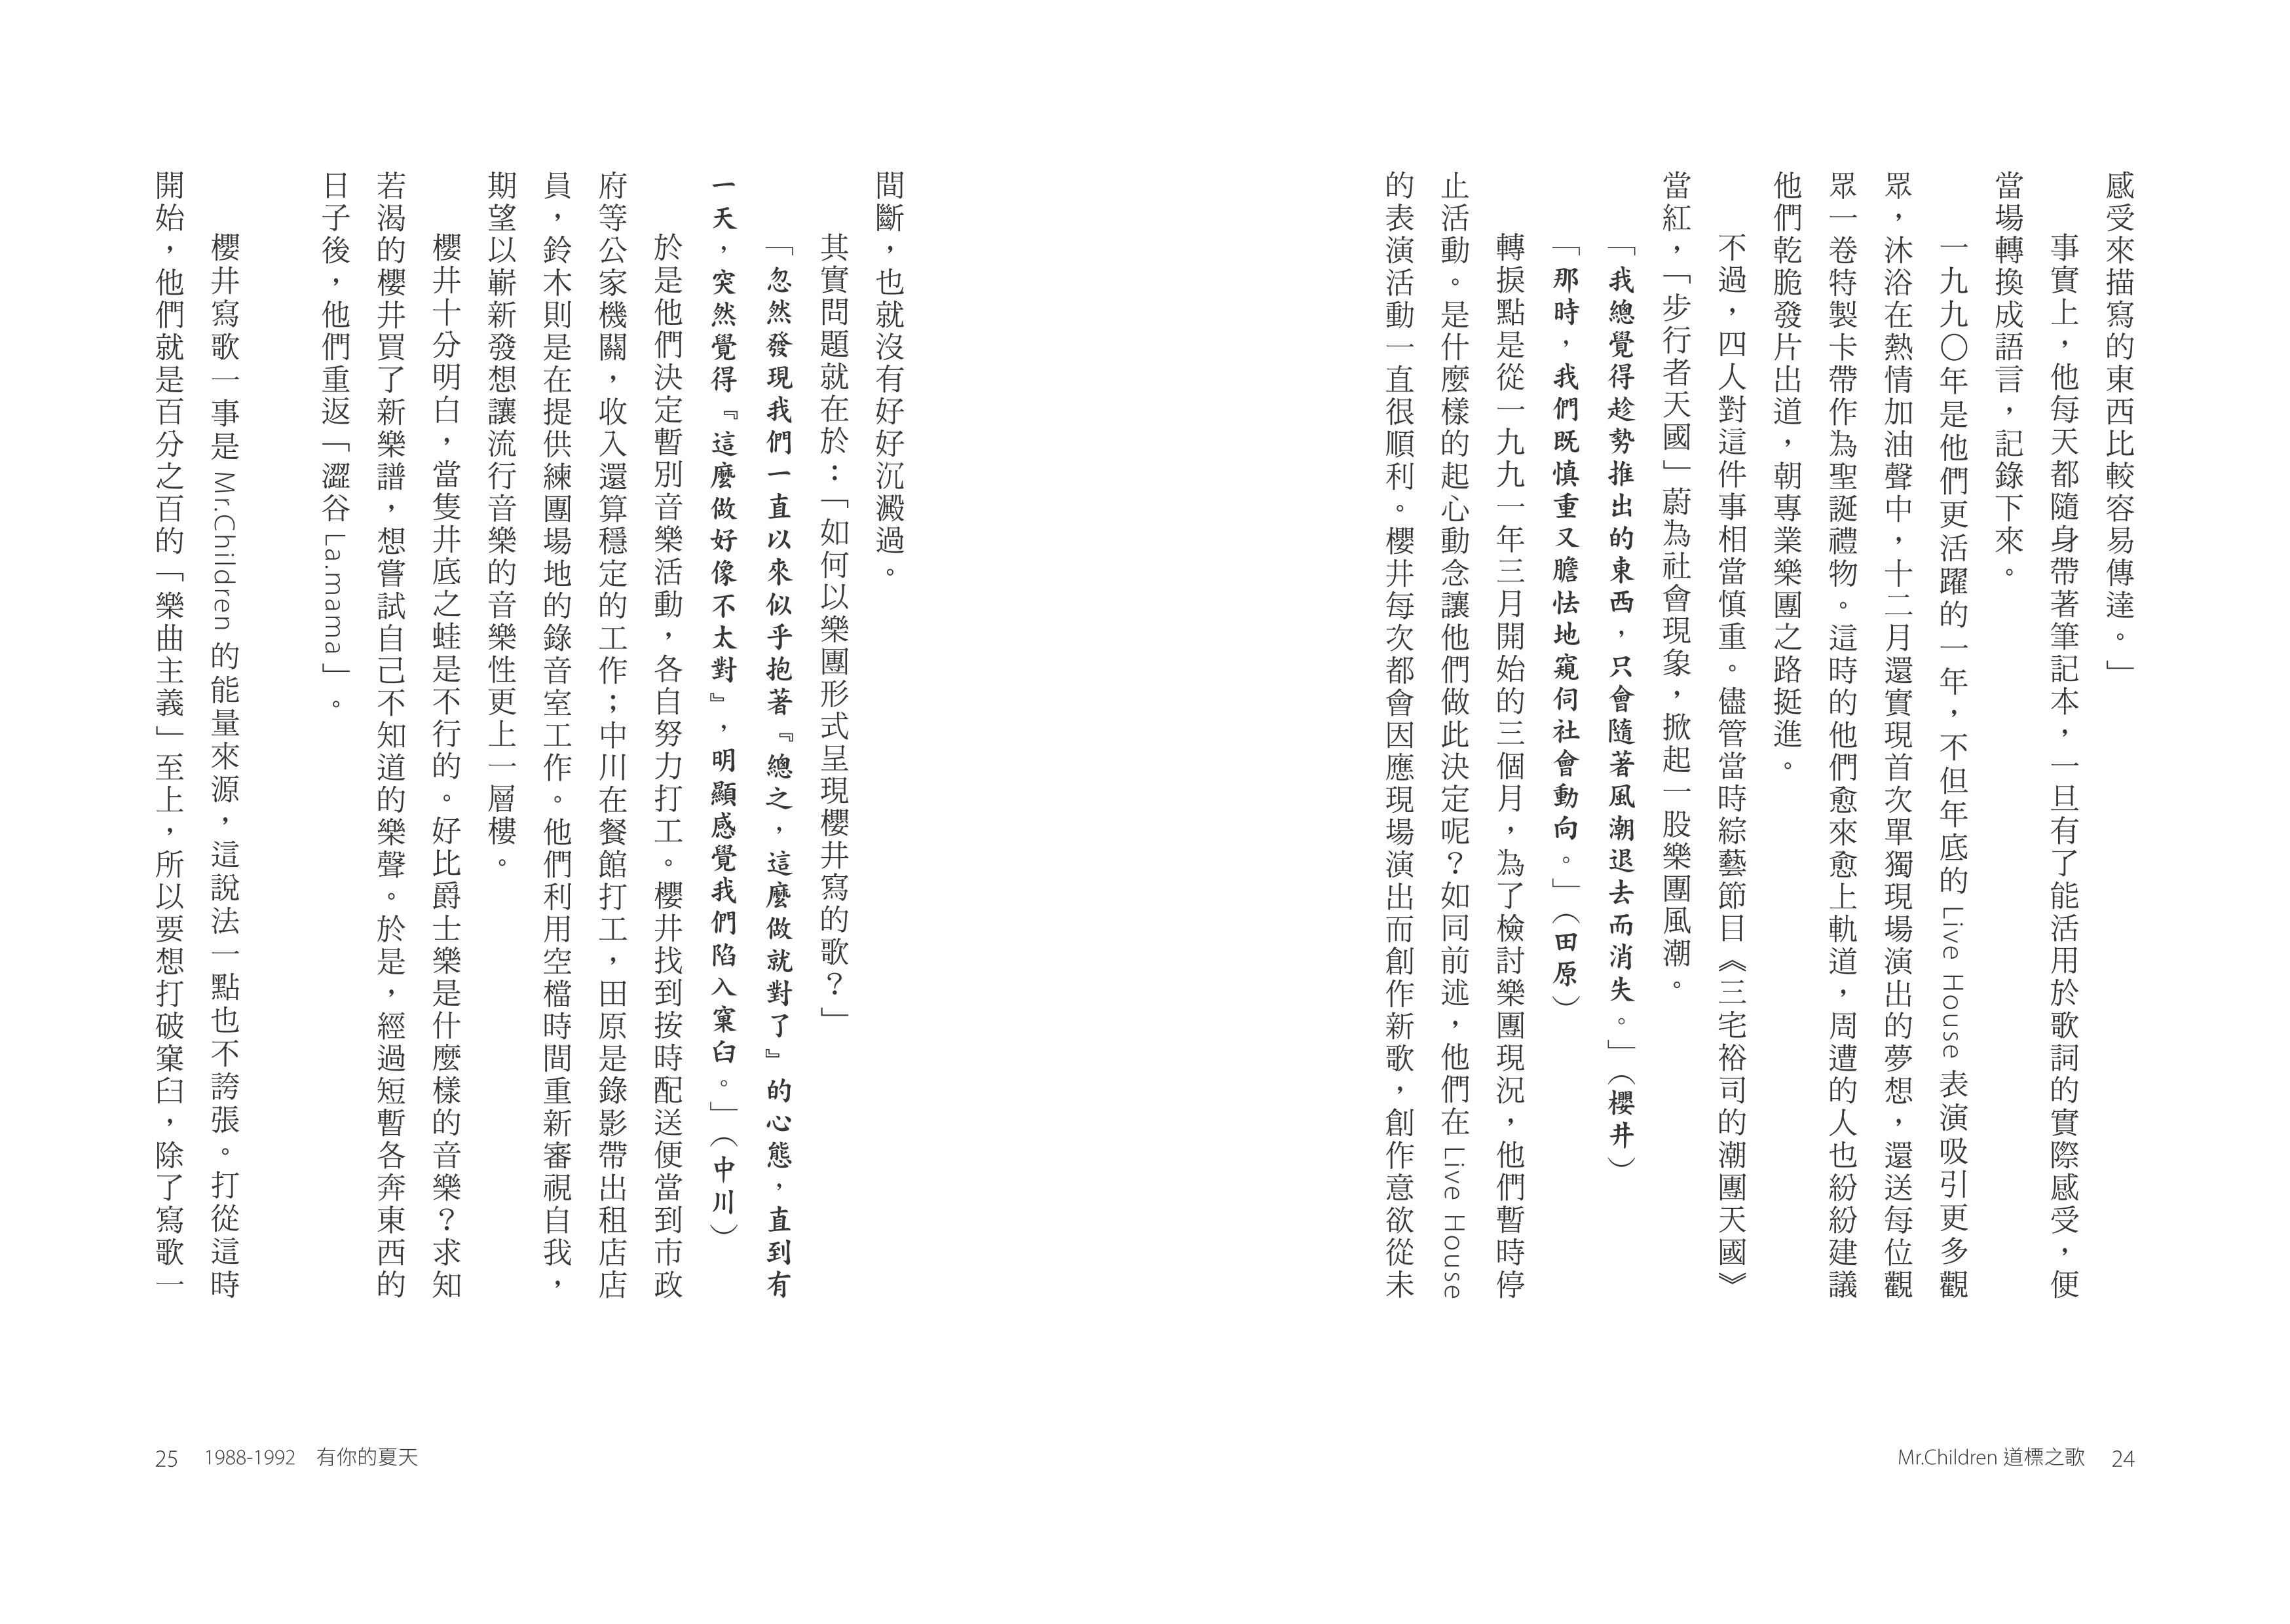 聯經出版事業公司 Mr Children道標之歌 日本國民天團mr Children出道30週年首本文字紀實 特別收錄經典歌詞中文版